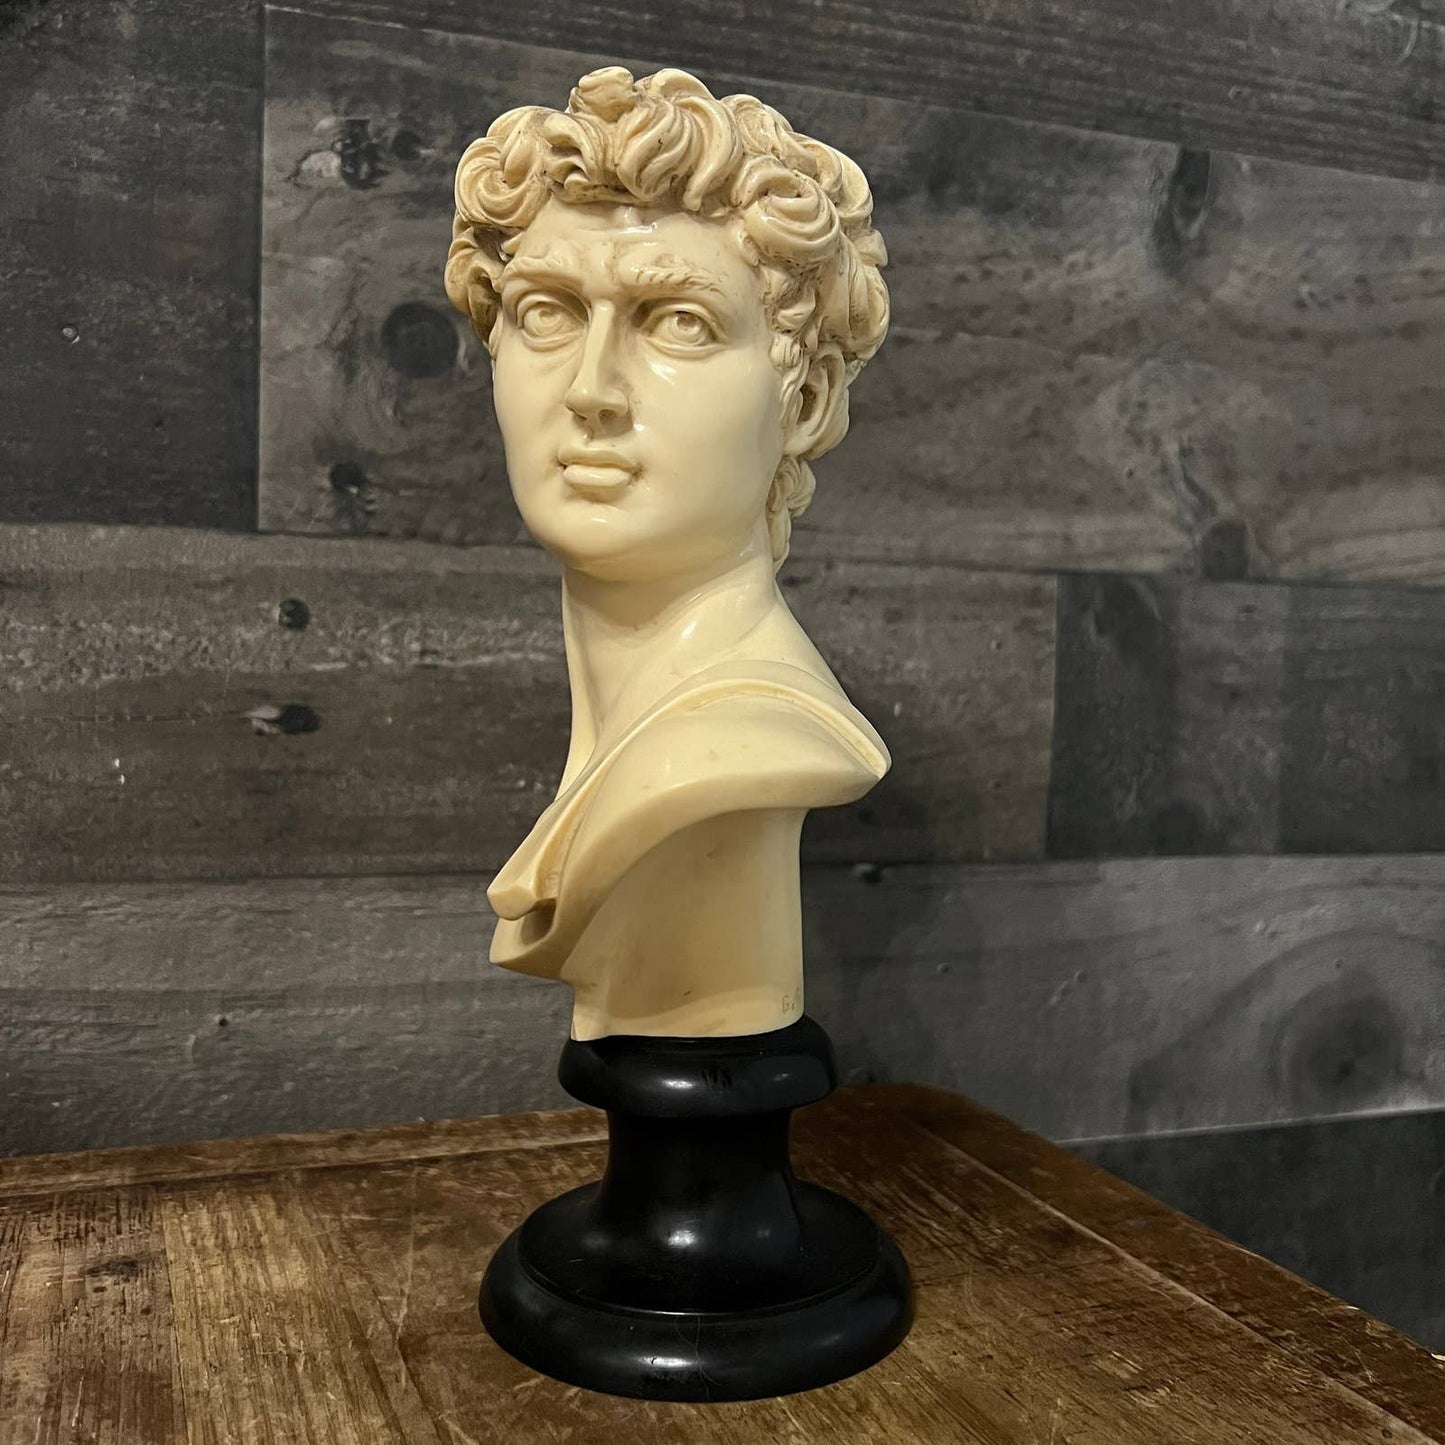 Vintage David Michelangelo bust statue sculpture by G. Ruggeri